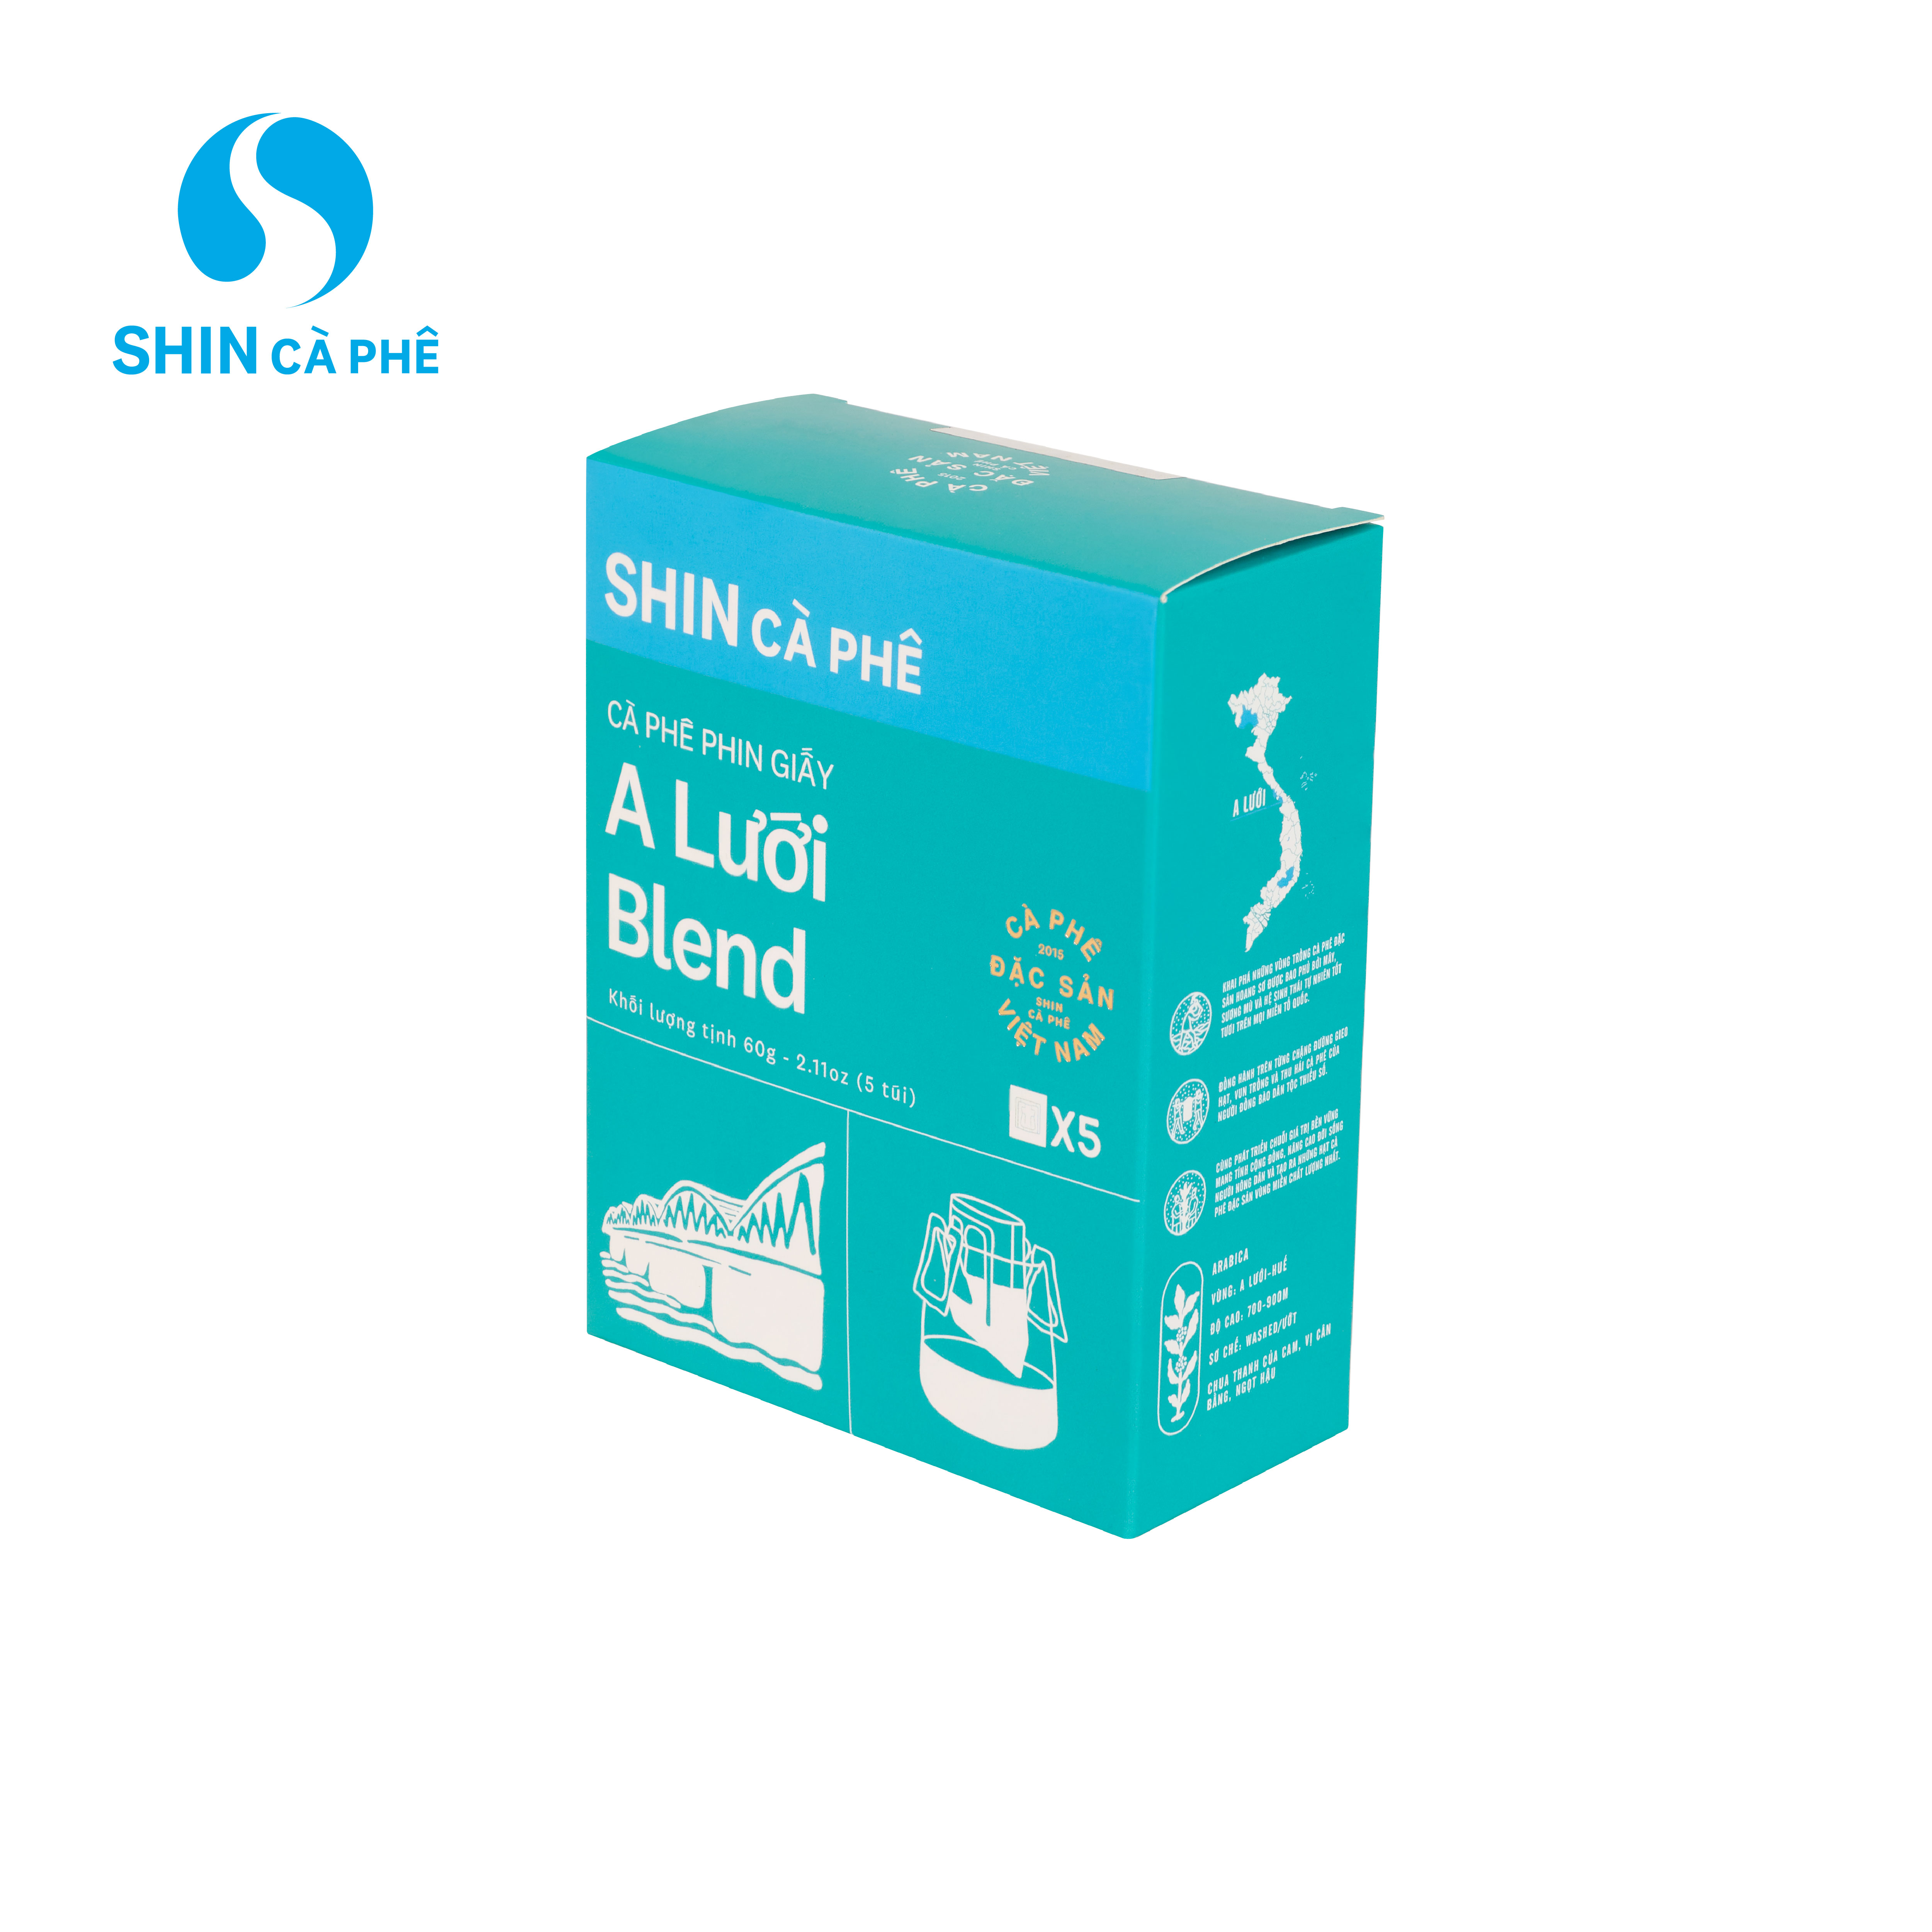 SHIN Cà Phê - A Lưới Blend Phin Giấy tiện lợi hộp 5 gói